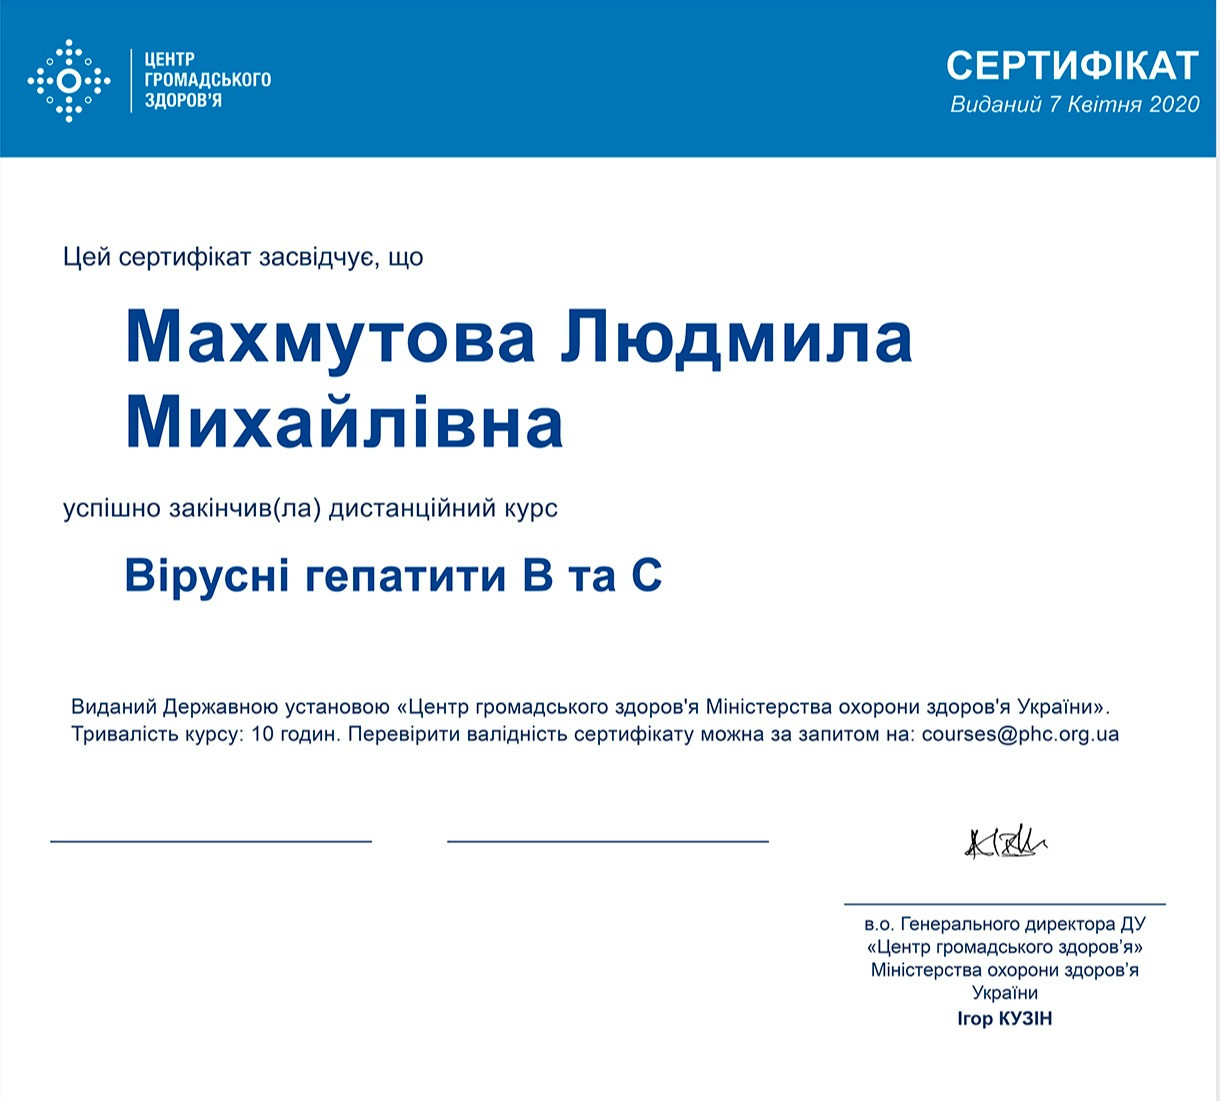 Сертификат об окончании дистанционного курса Вирусные гепатиты В и С